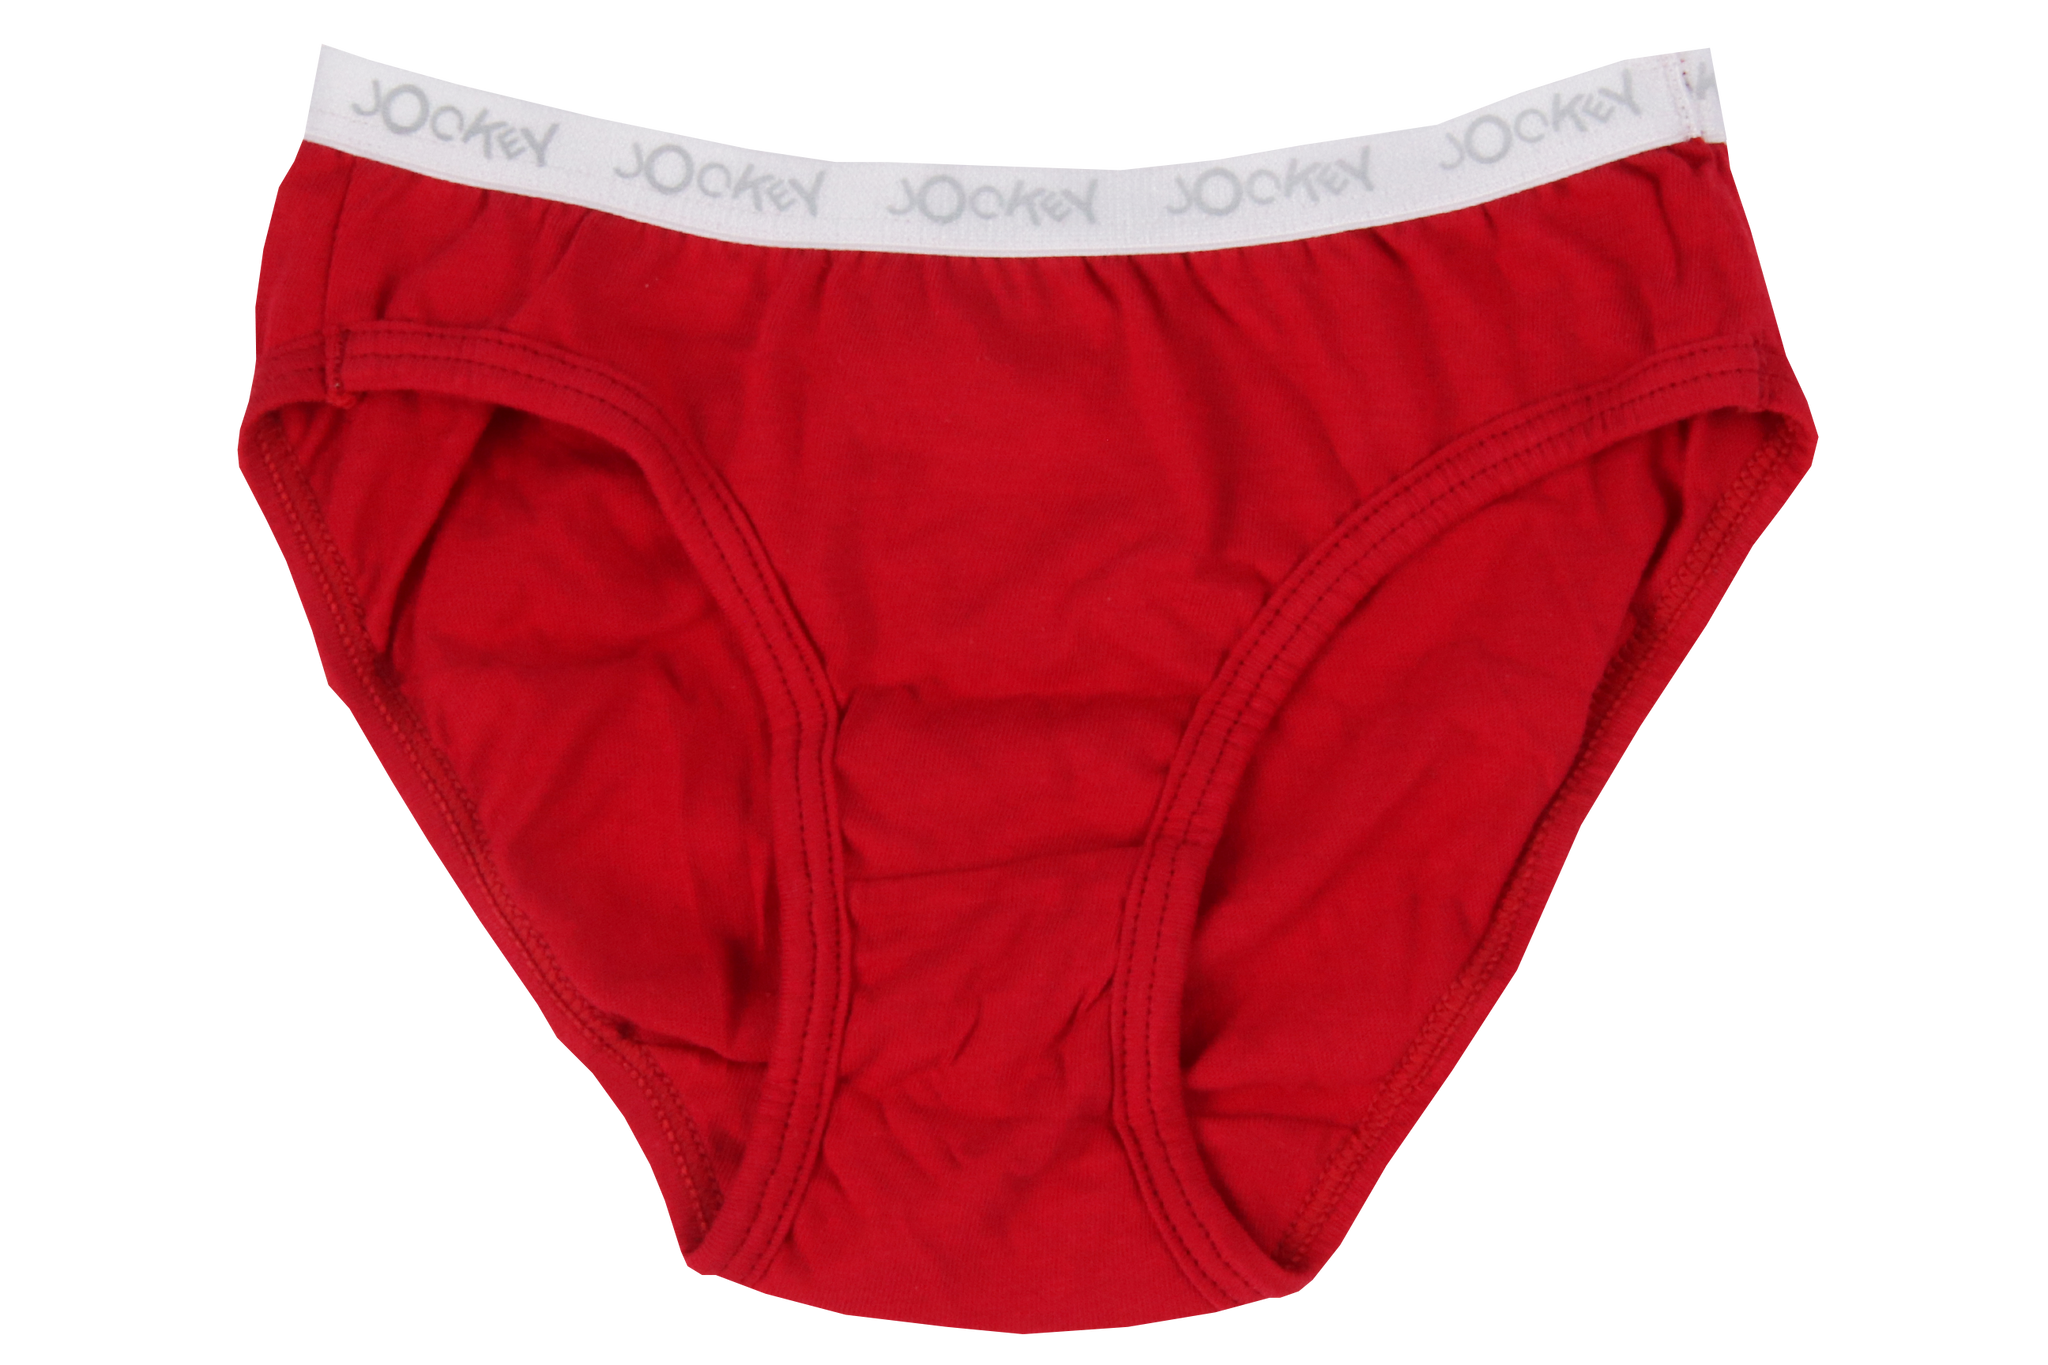 Jockey Women's Panties, Buy Online, South Africa